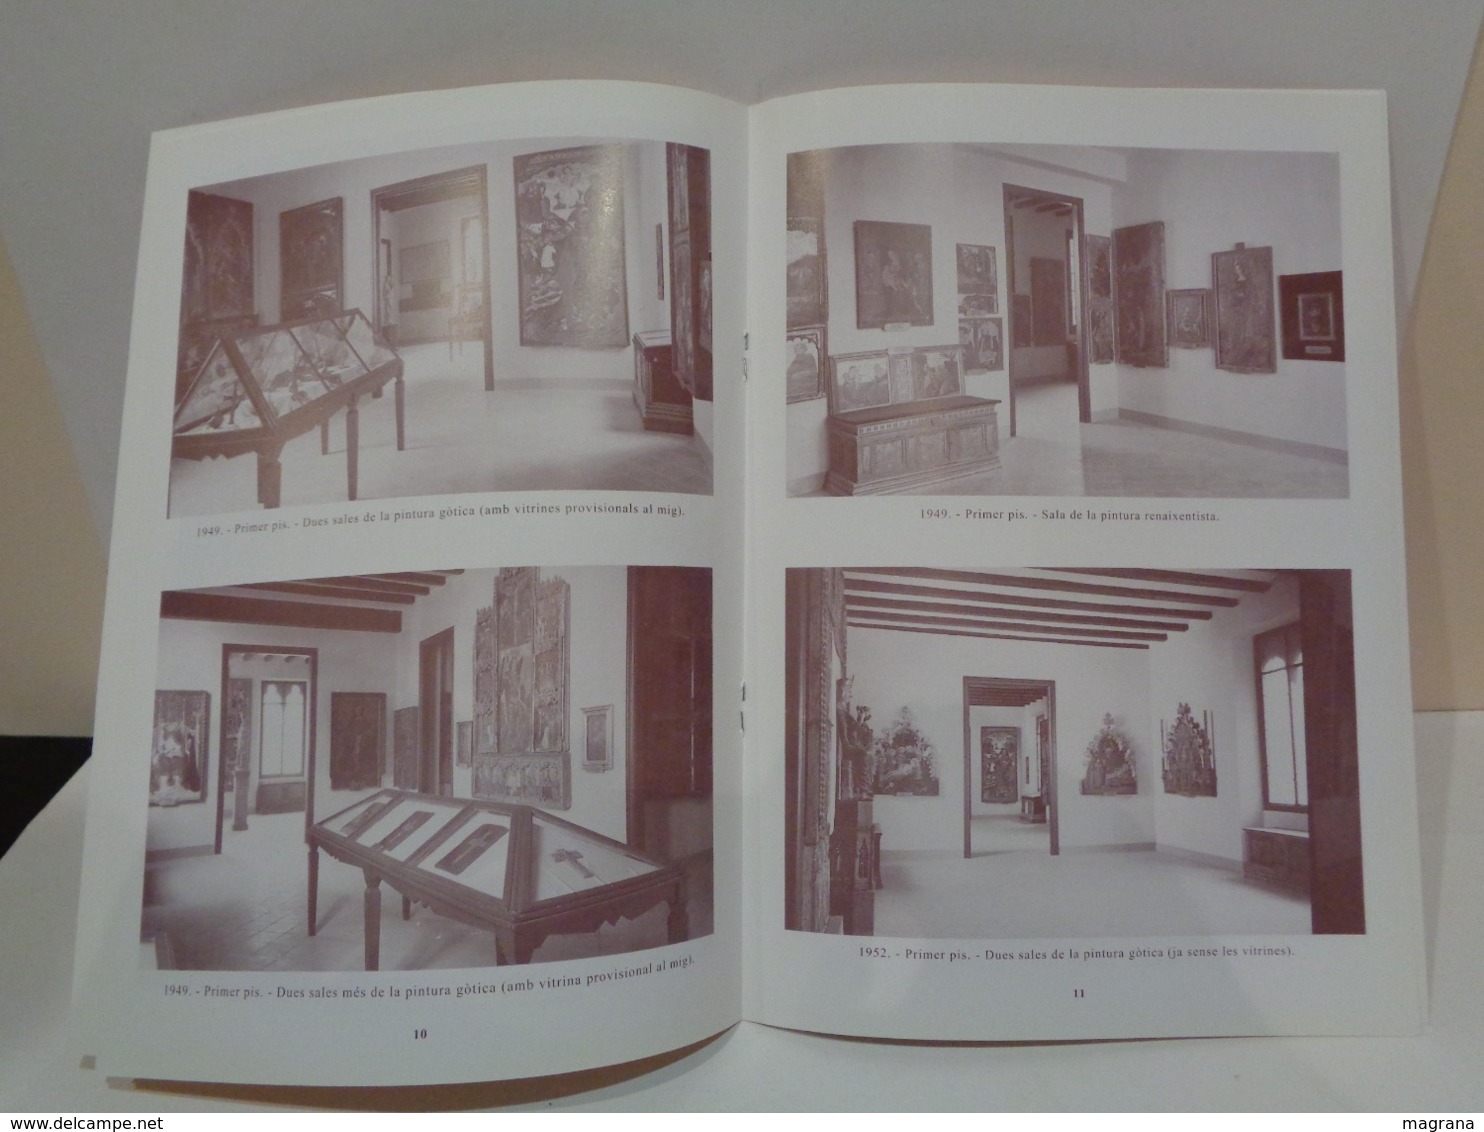 El Museu Del Dr. Junyent. Vic, 1949-1997. Ramon Ordeig Mata. Any 2002. - Histoire Et Art